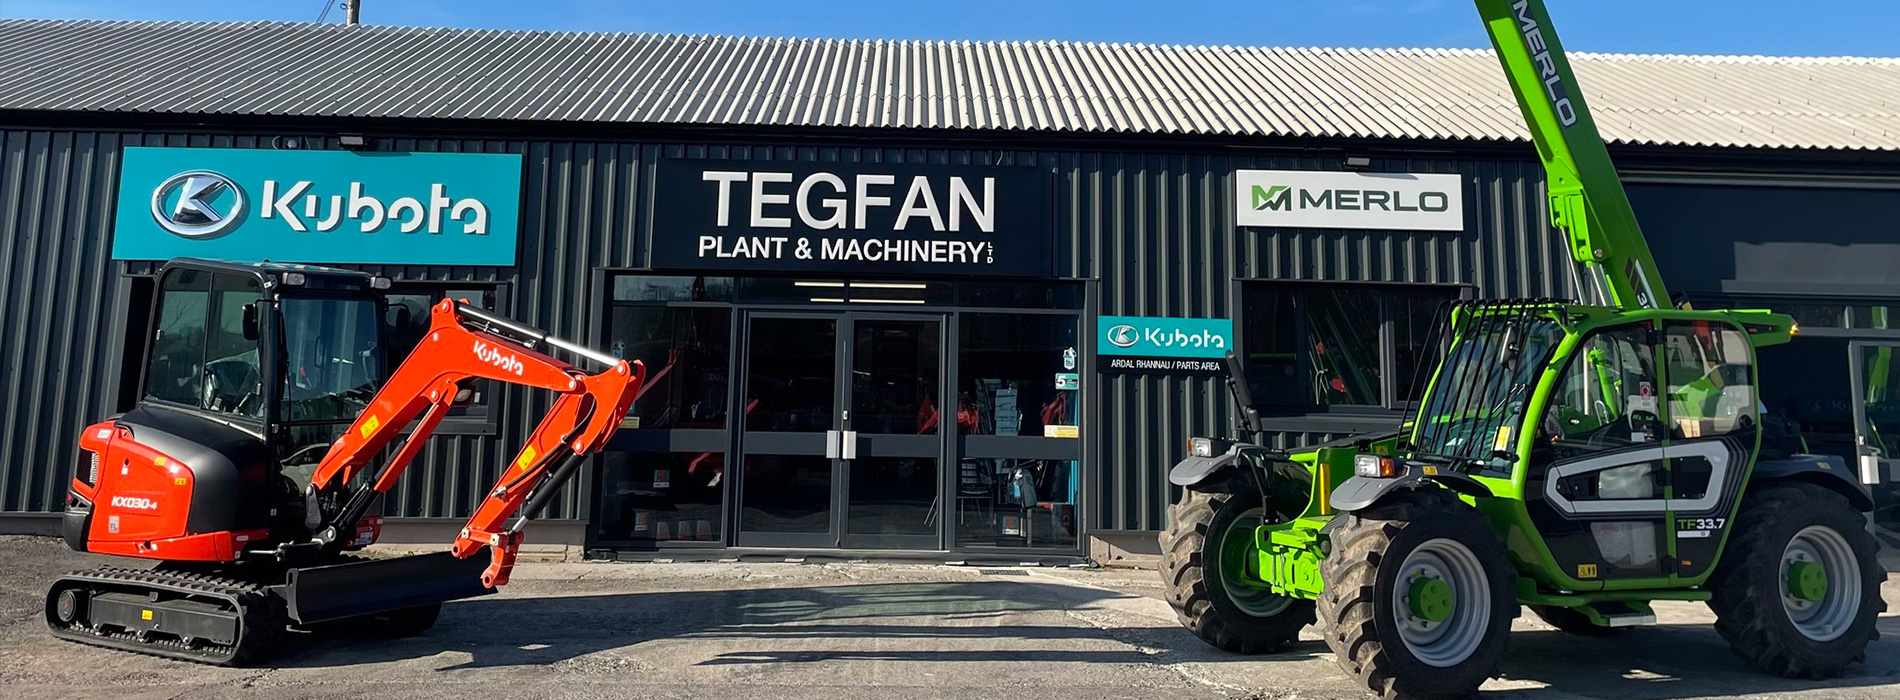 Tegfan Plant & Machinery Ltd